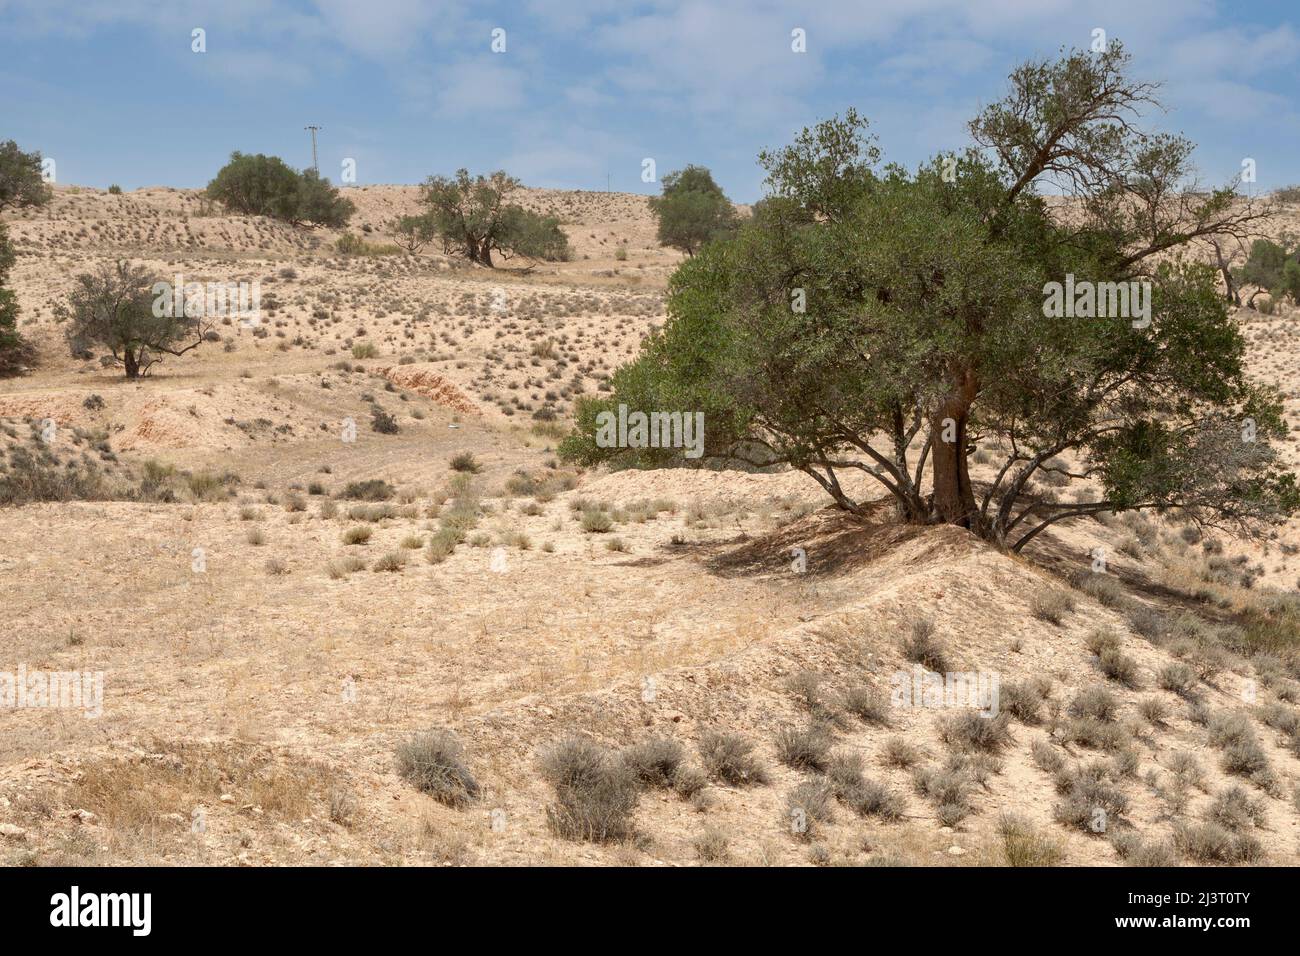 Libia. Olivos cerca de Tarmeisa en el Jebel Nefusa. Observe cómo las bermas crean terrazas para capturar y reducir el esguinde del agua de lluvia. Foto de stock